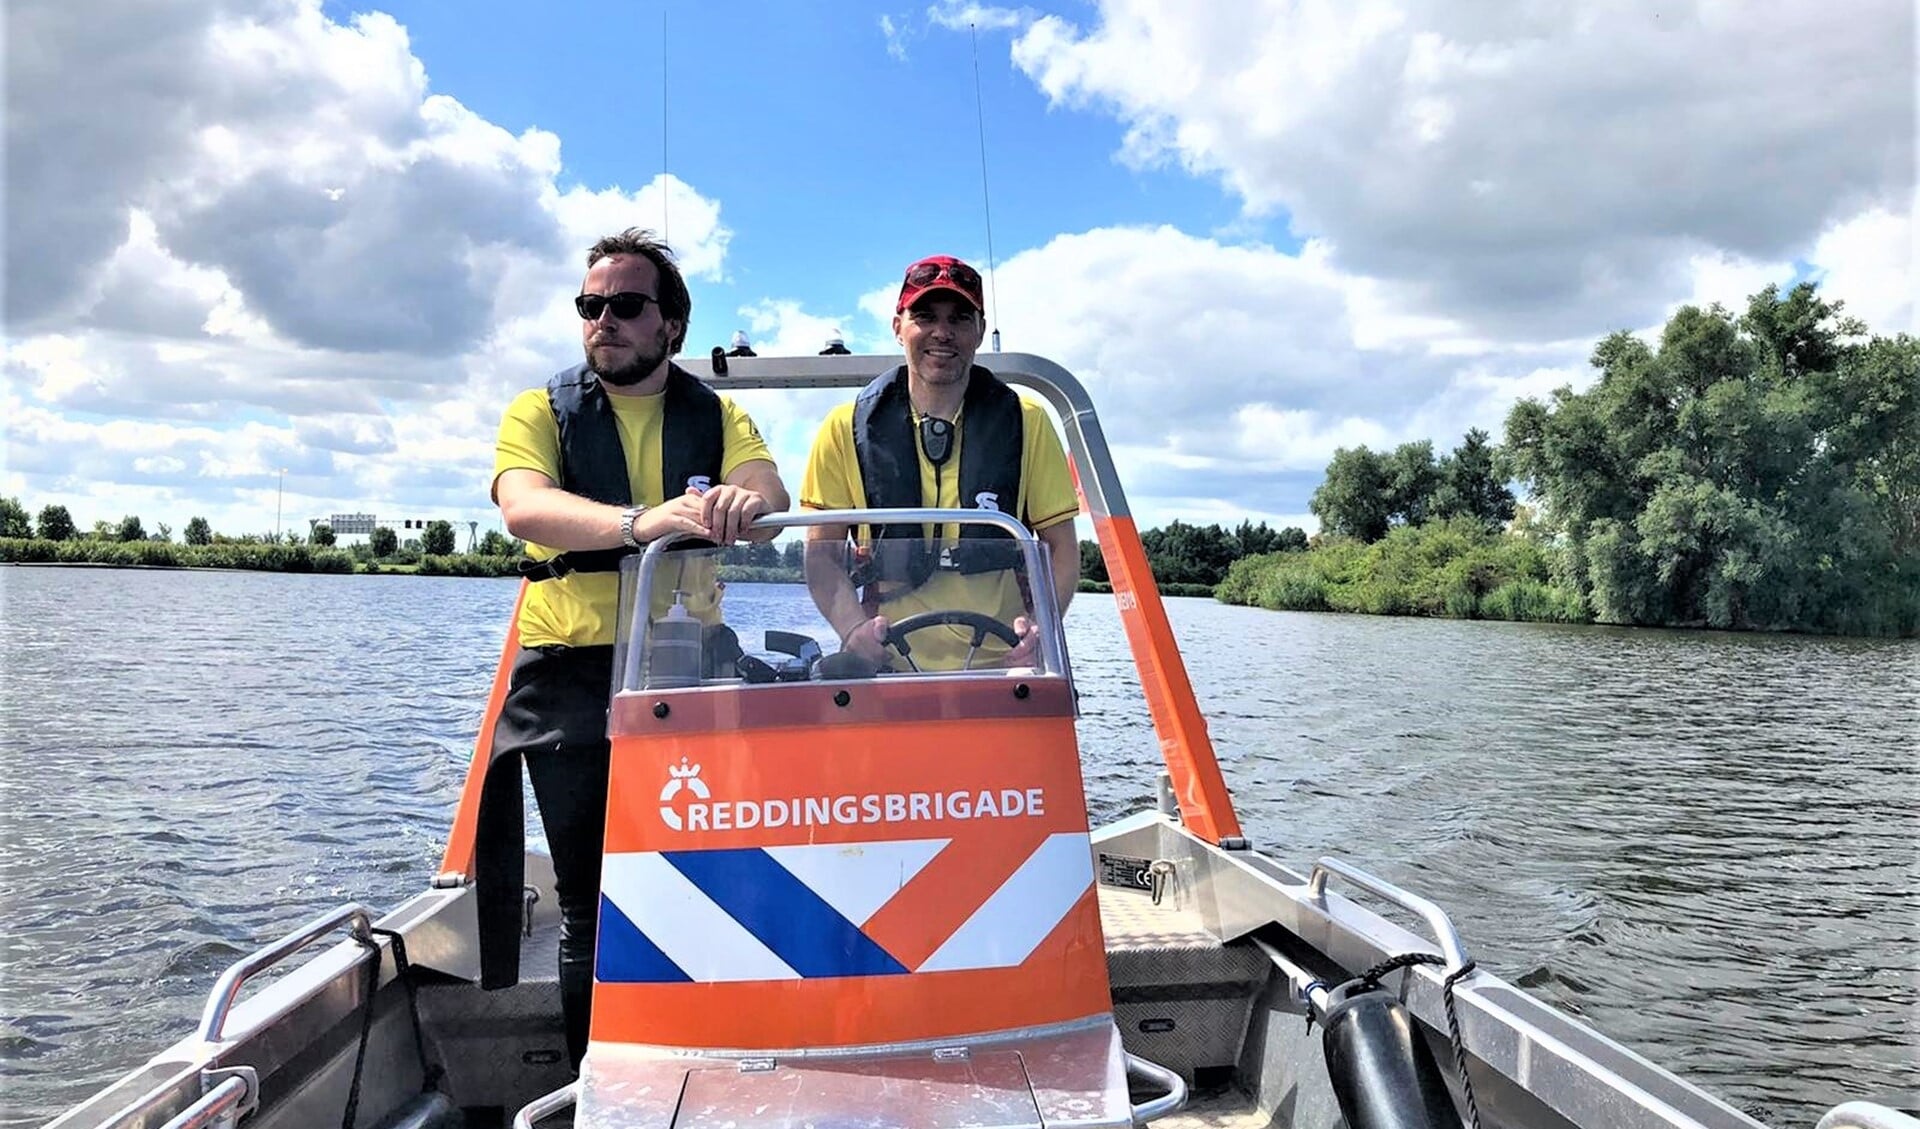 De Reddingsbrigade Leidschendam-Voorburg zorgt voor de bewaking - per boot en aan de kant (op de strandjes) - in recreatiegebied Vlietland in Leidschendam (foto's: pr Reddingsbrigade Leidschendam-Voorburg).